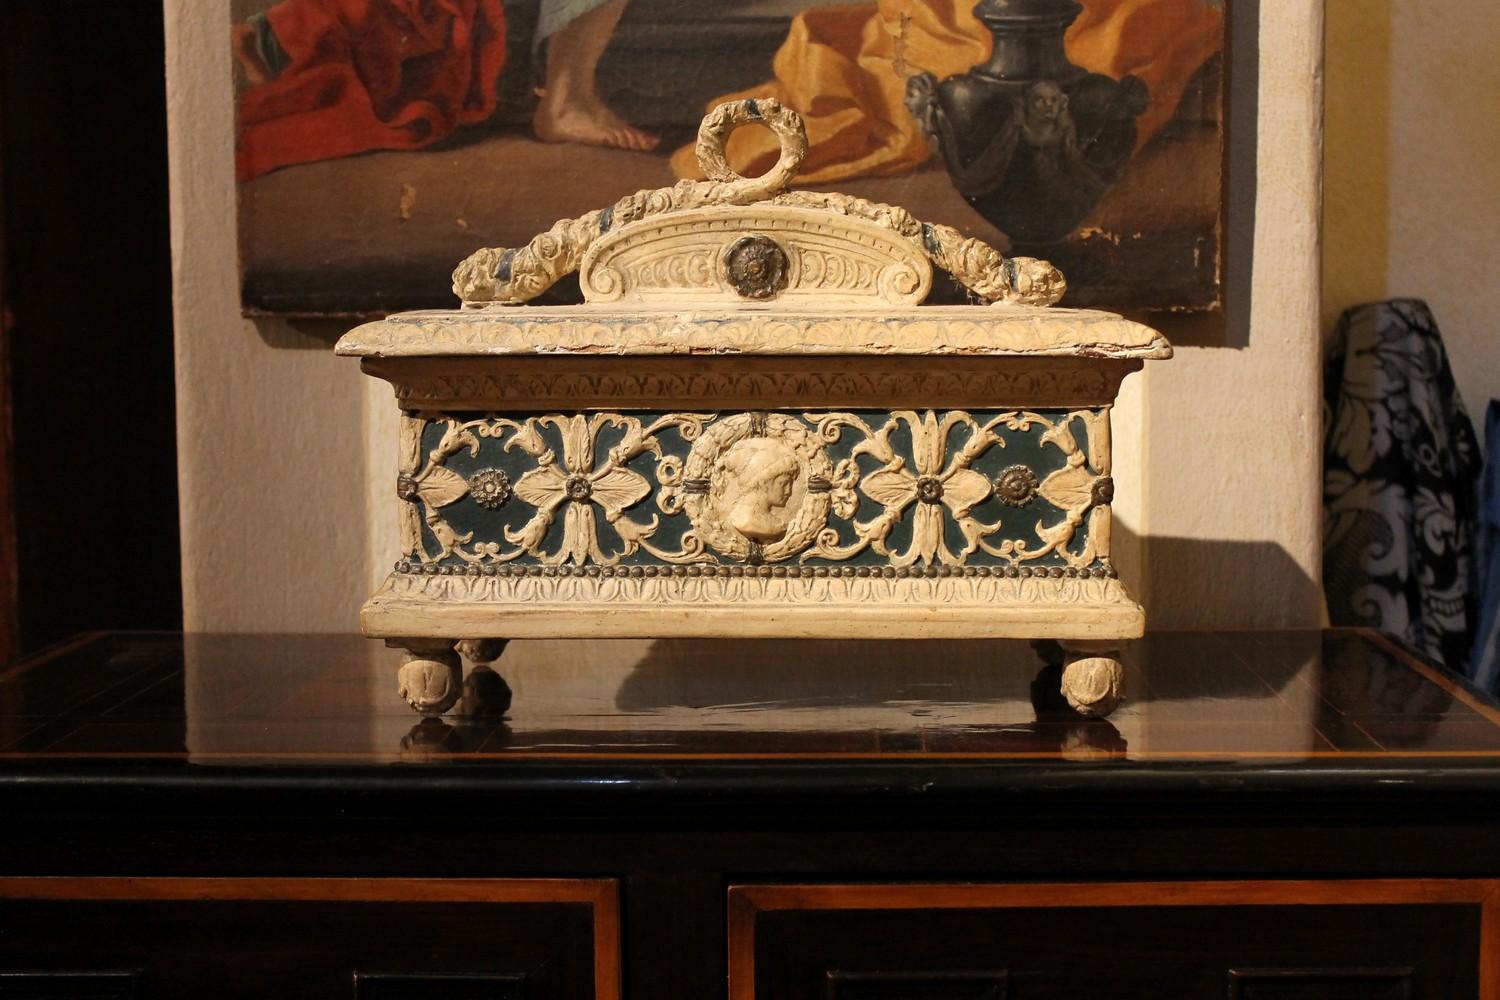 Cette belle boîte à couvercle rectangulaire Florentine du XIXe siècle est entièrement décorée en rond de tous les motifs italiens typiques de la Renaissance. La structure en bois blanc laqué et peint à la main, centrée par une large bande peinte en